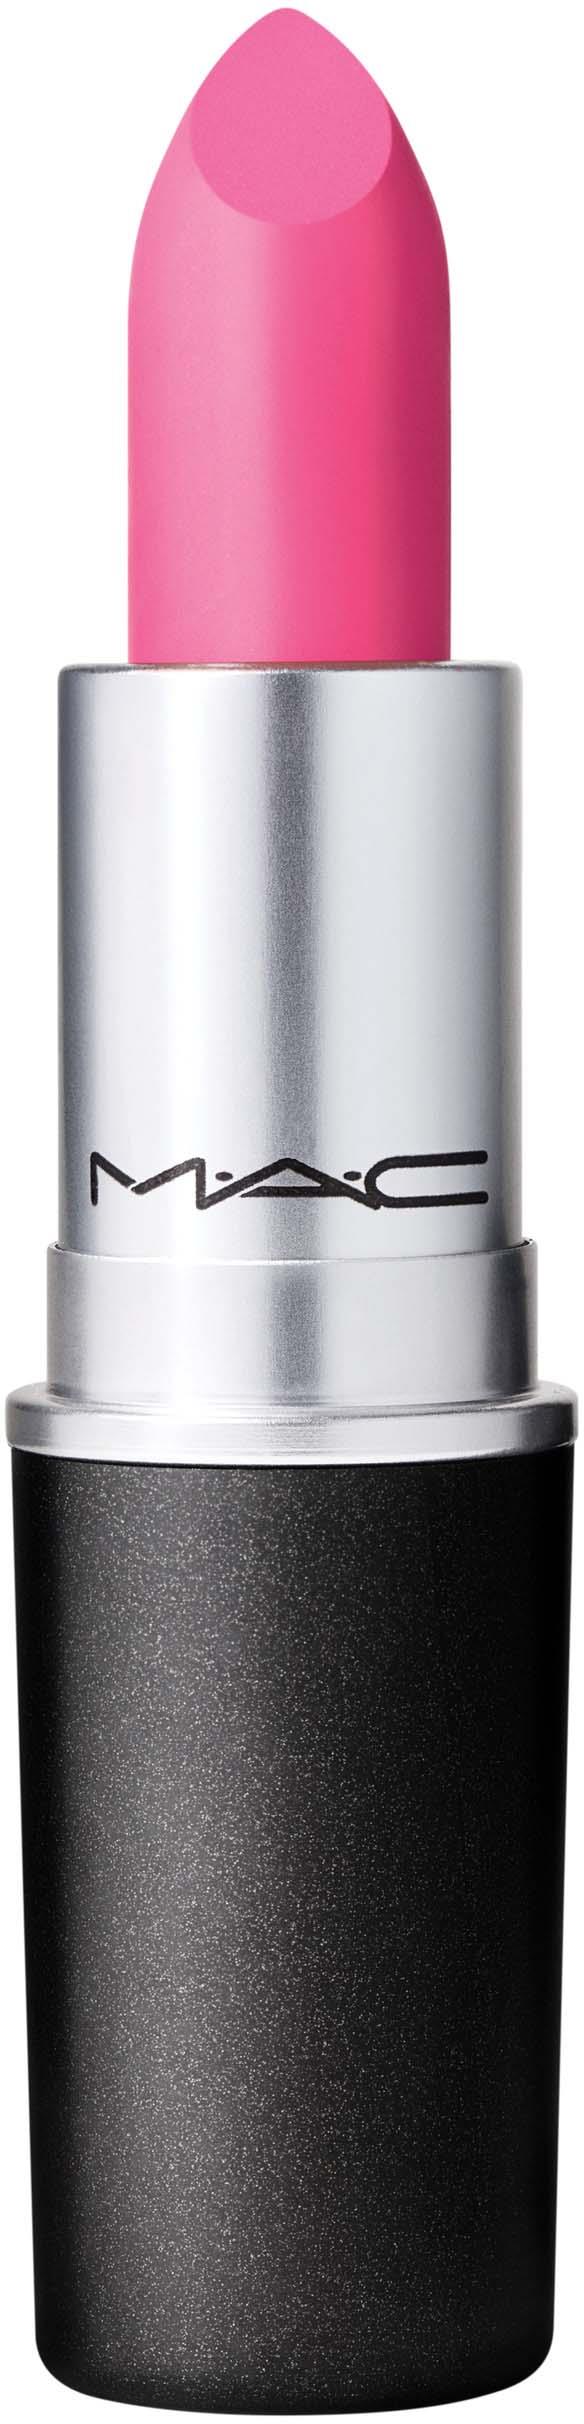 Afrikaanse Woordvoerder Met andere woorden MAC Cosmetics Amplified Creme Lipstick Do Not Disturb | lyko.com